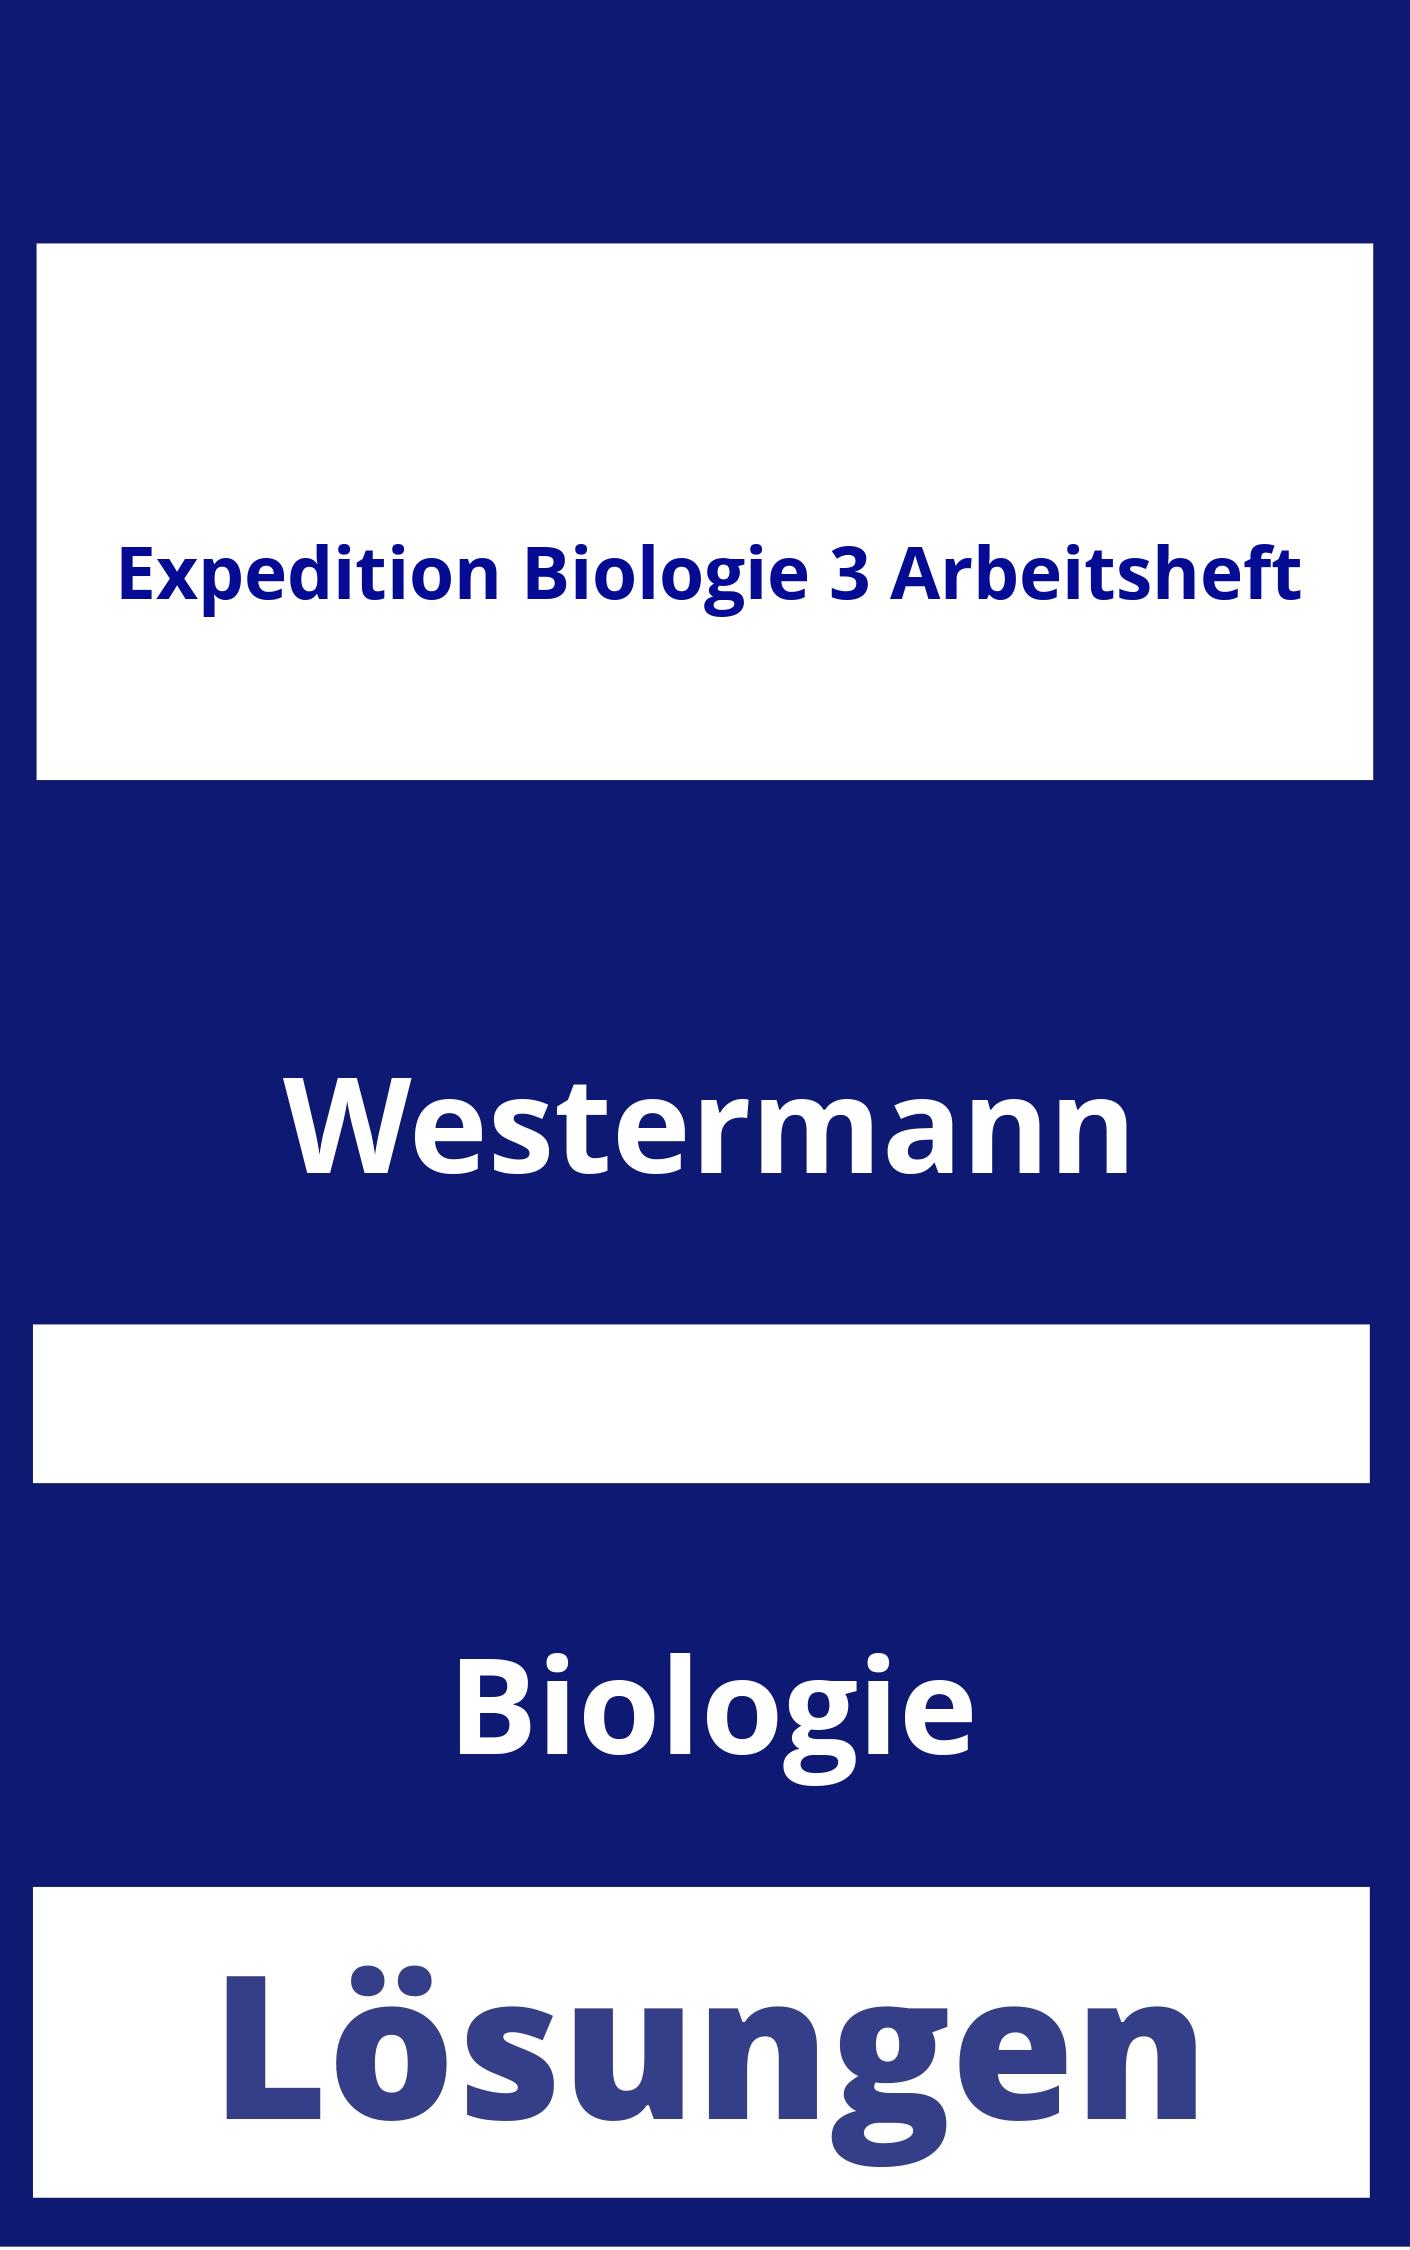 Expedition Biologie 3 Arbeitsheft Lösungen PDF